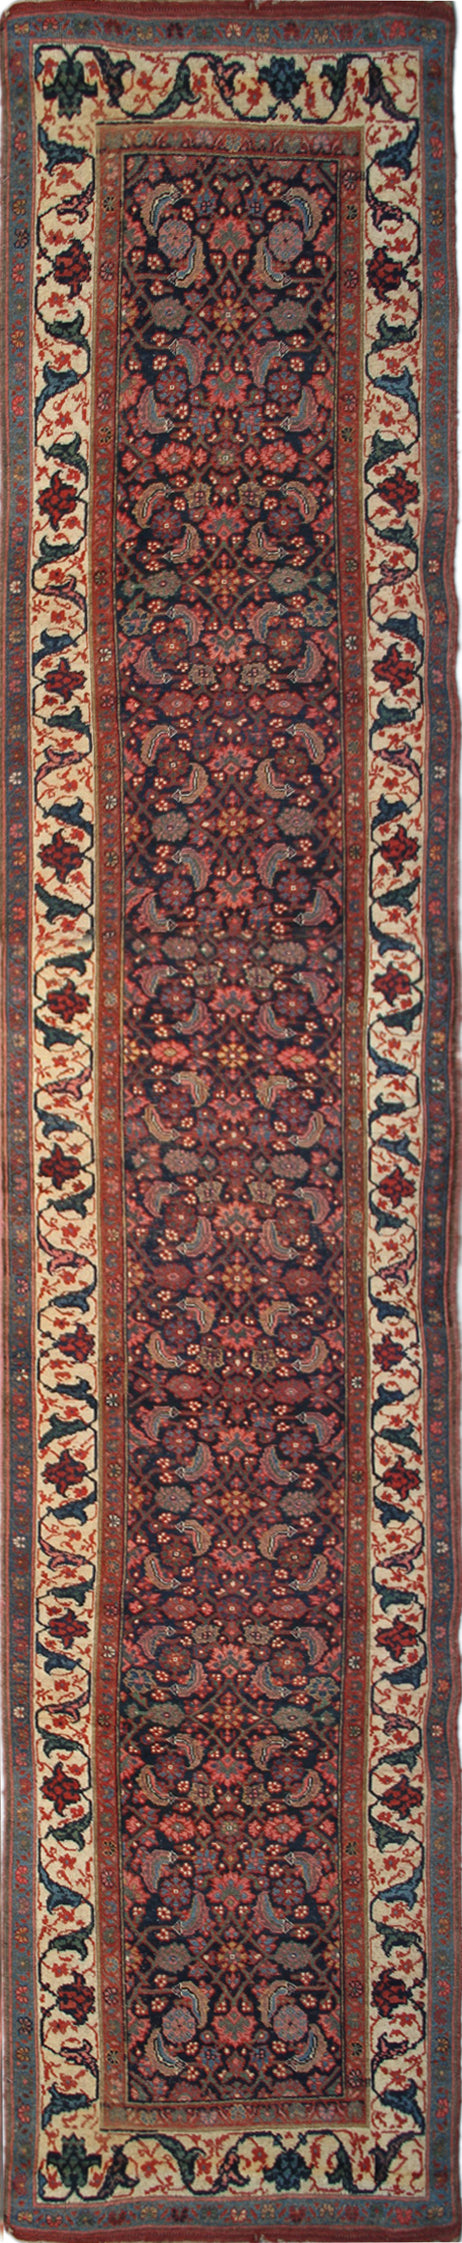 3'x16' Long Vintage Persian Runner Rug